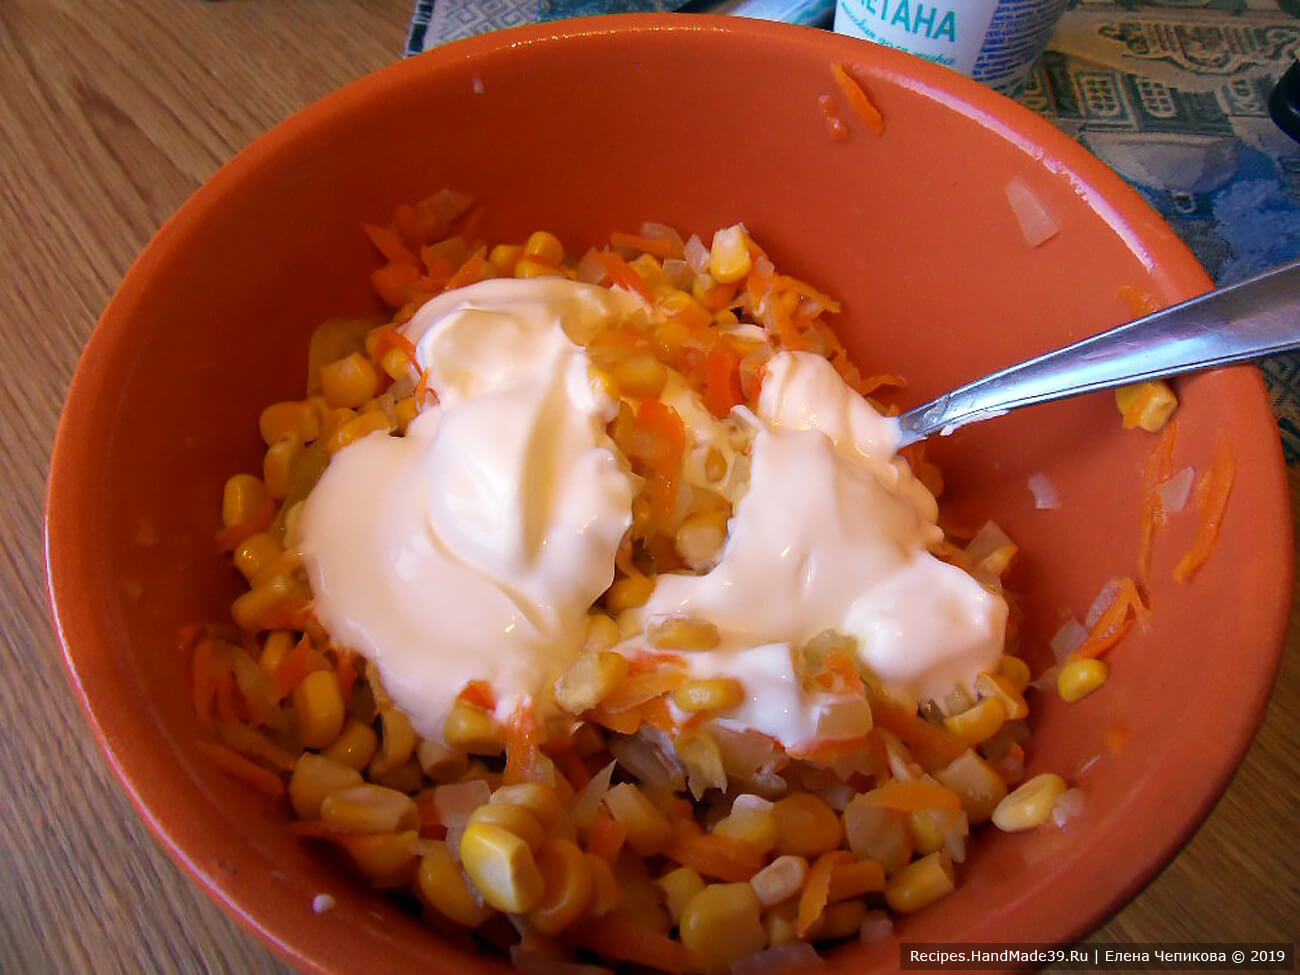 Лук и морковь поджарить на масле. Добавить в конце на сковороду кукурузу, хорошо прогреть всю смесь. Посолить по вкусу. Заправить овощную смесь сметаной (примерно 3 ст. л.)